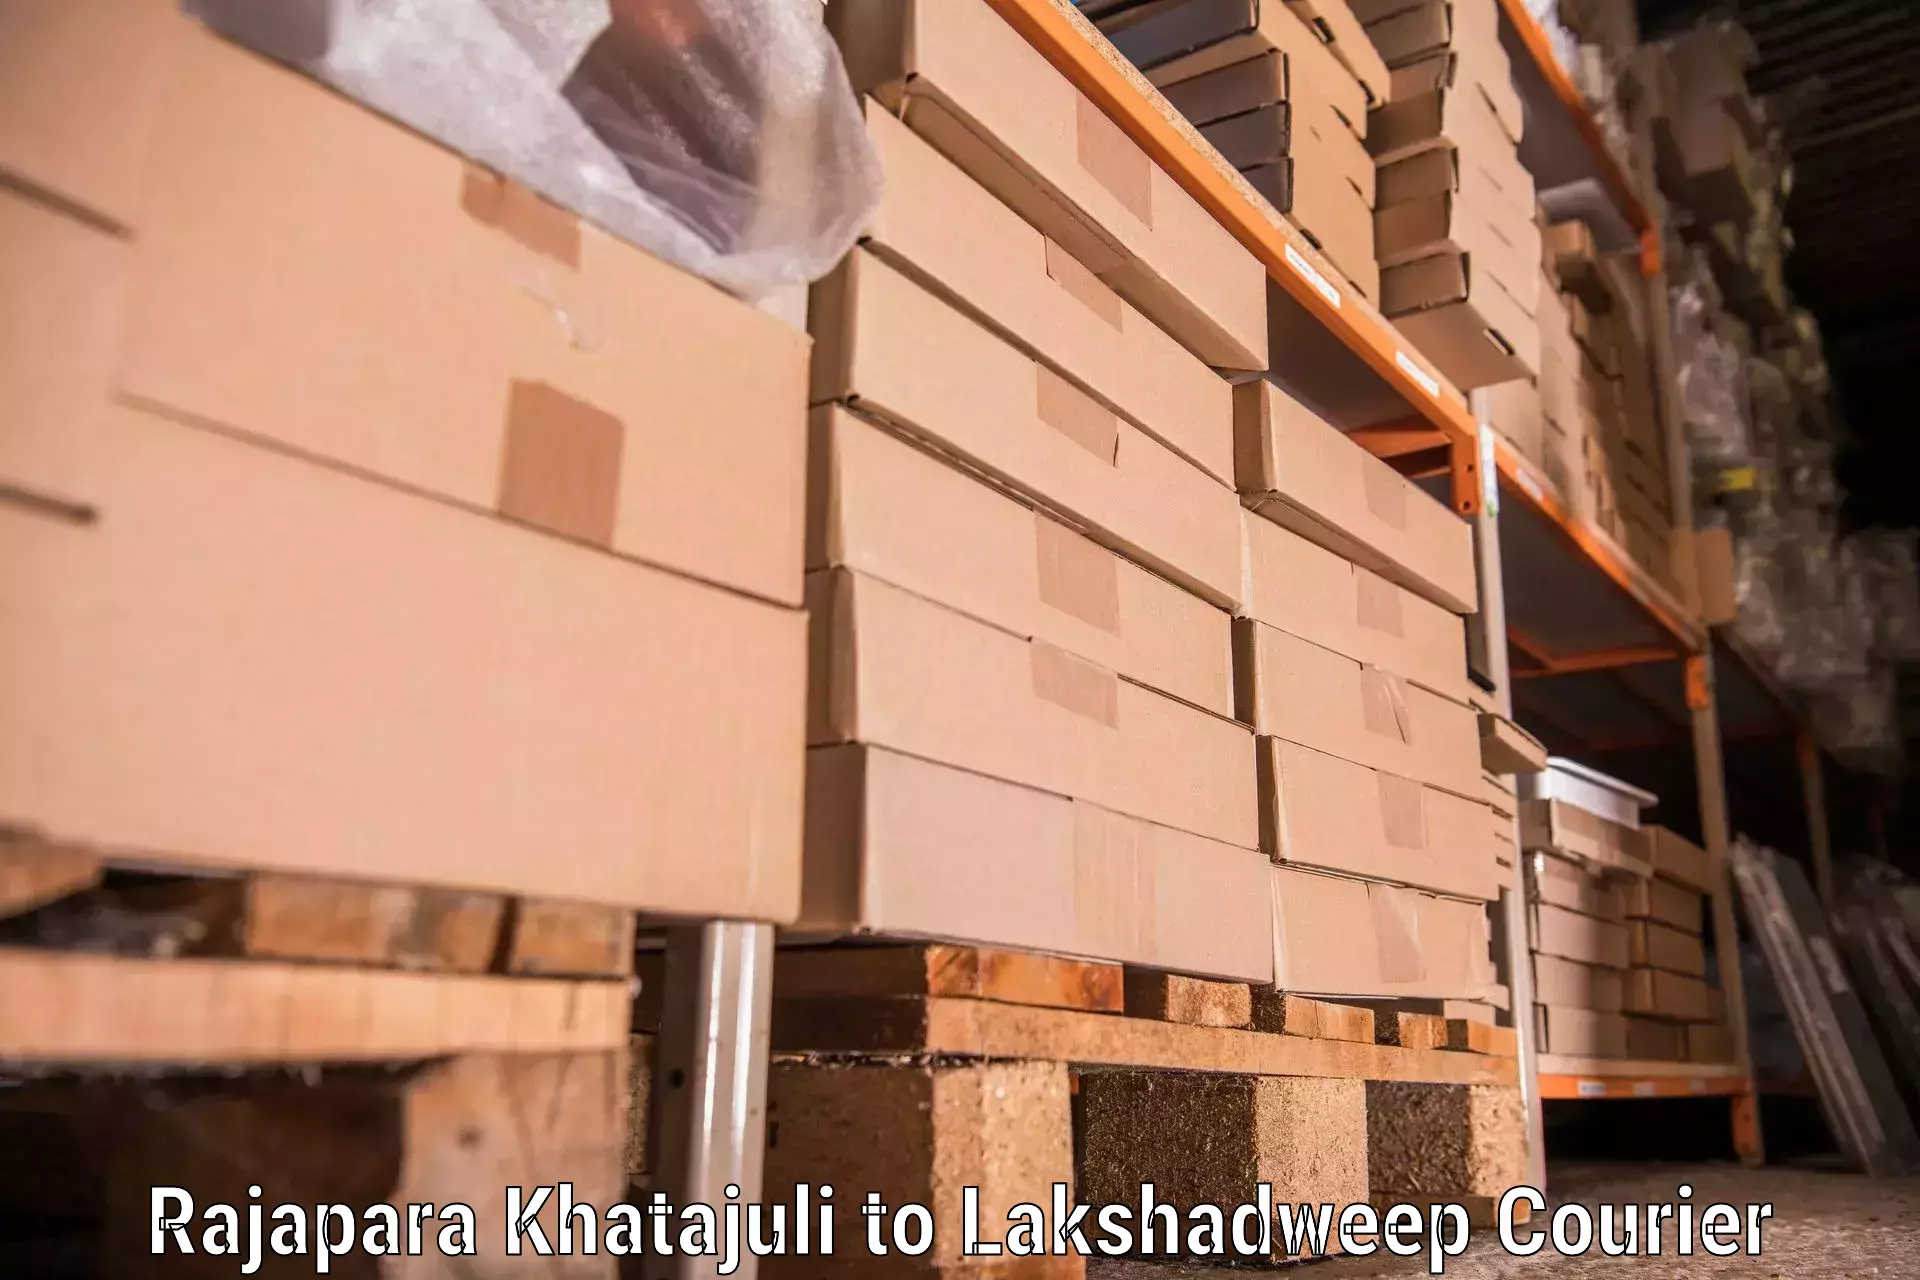 Efficient furniture movers Rajapara Khatajuli to Lakshadweep